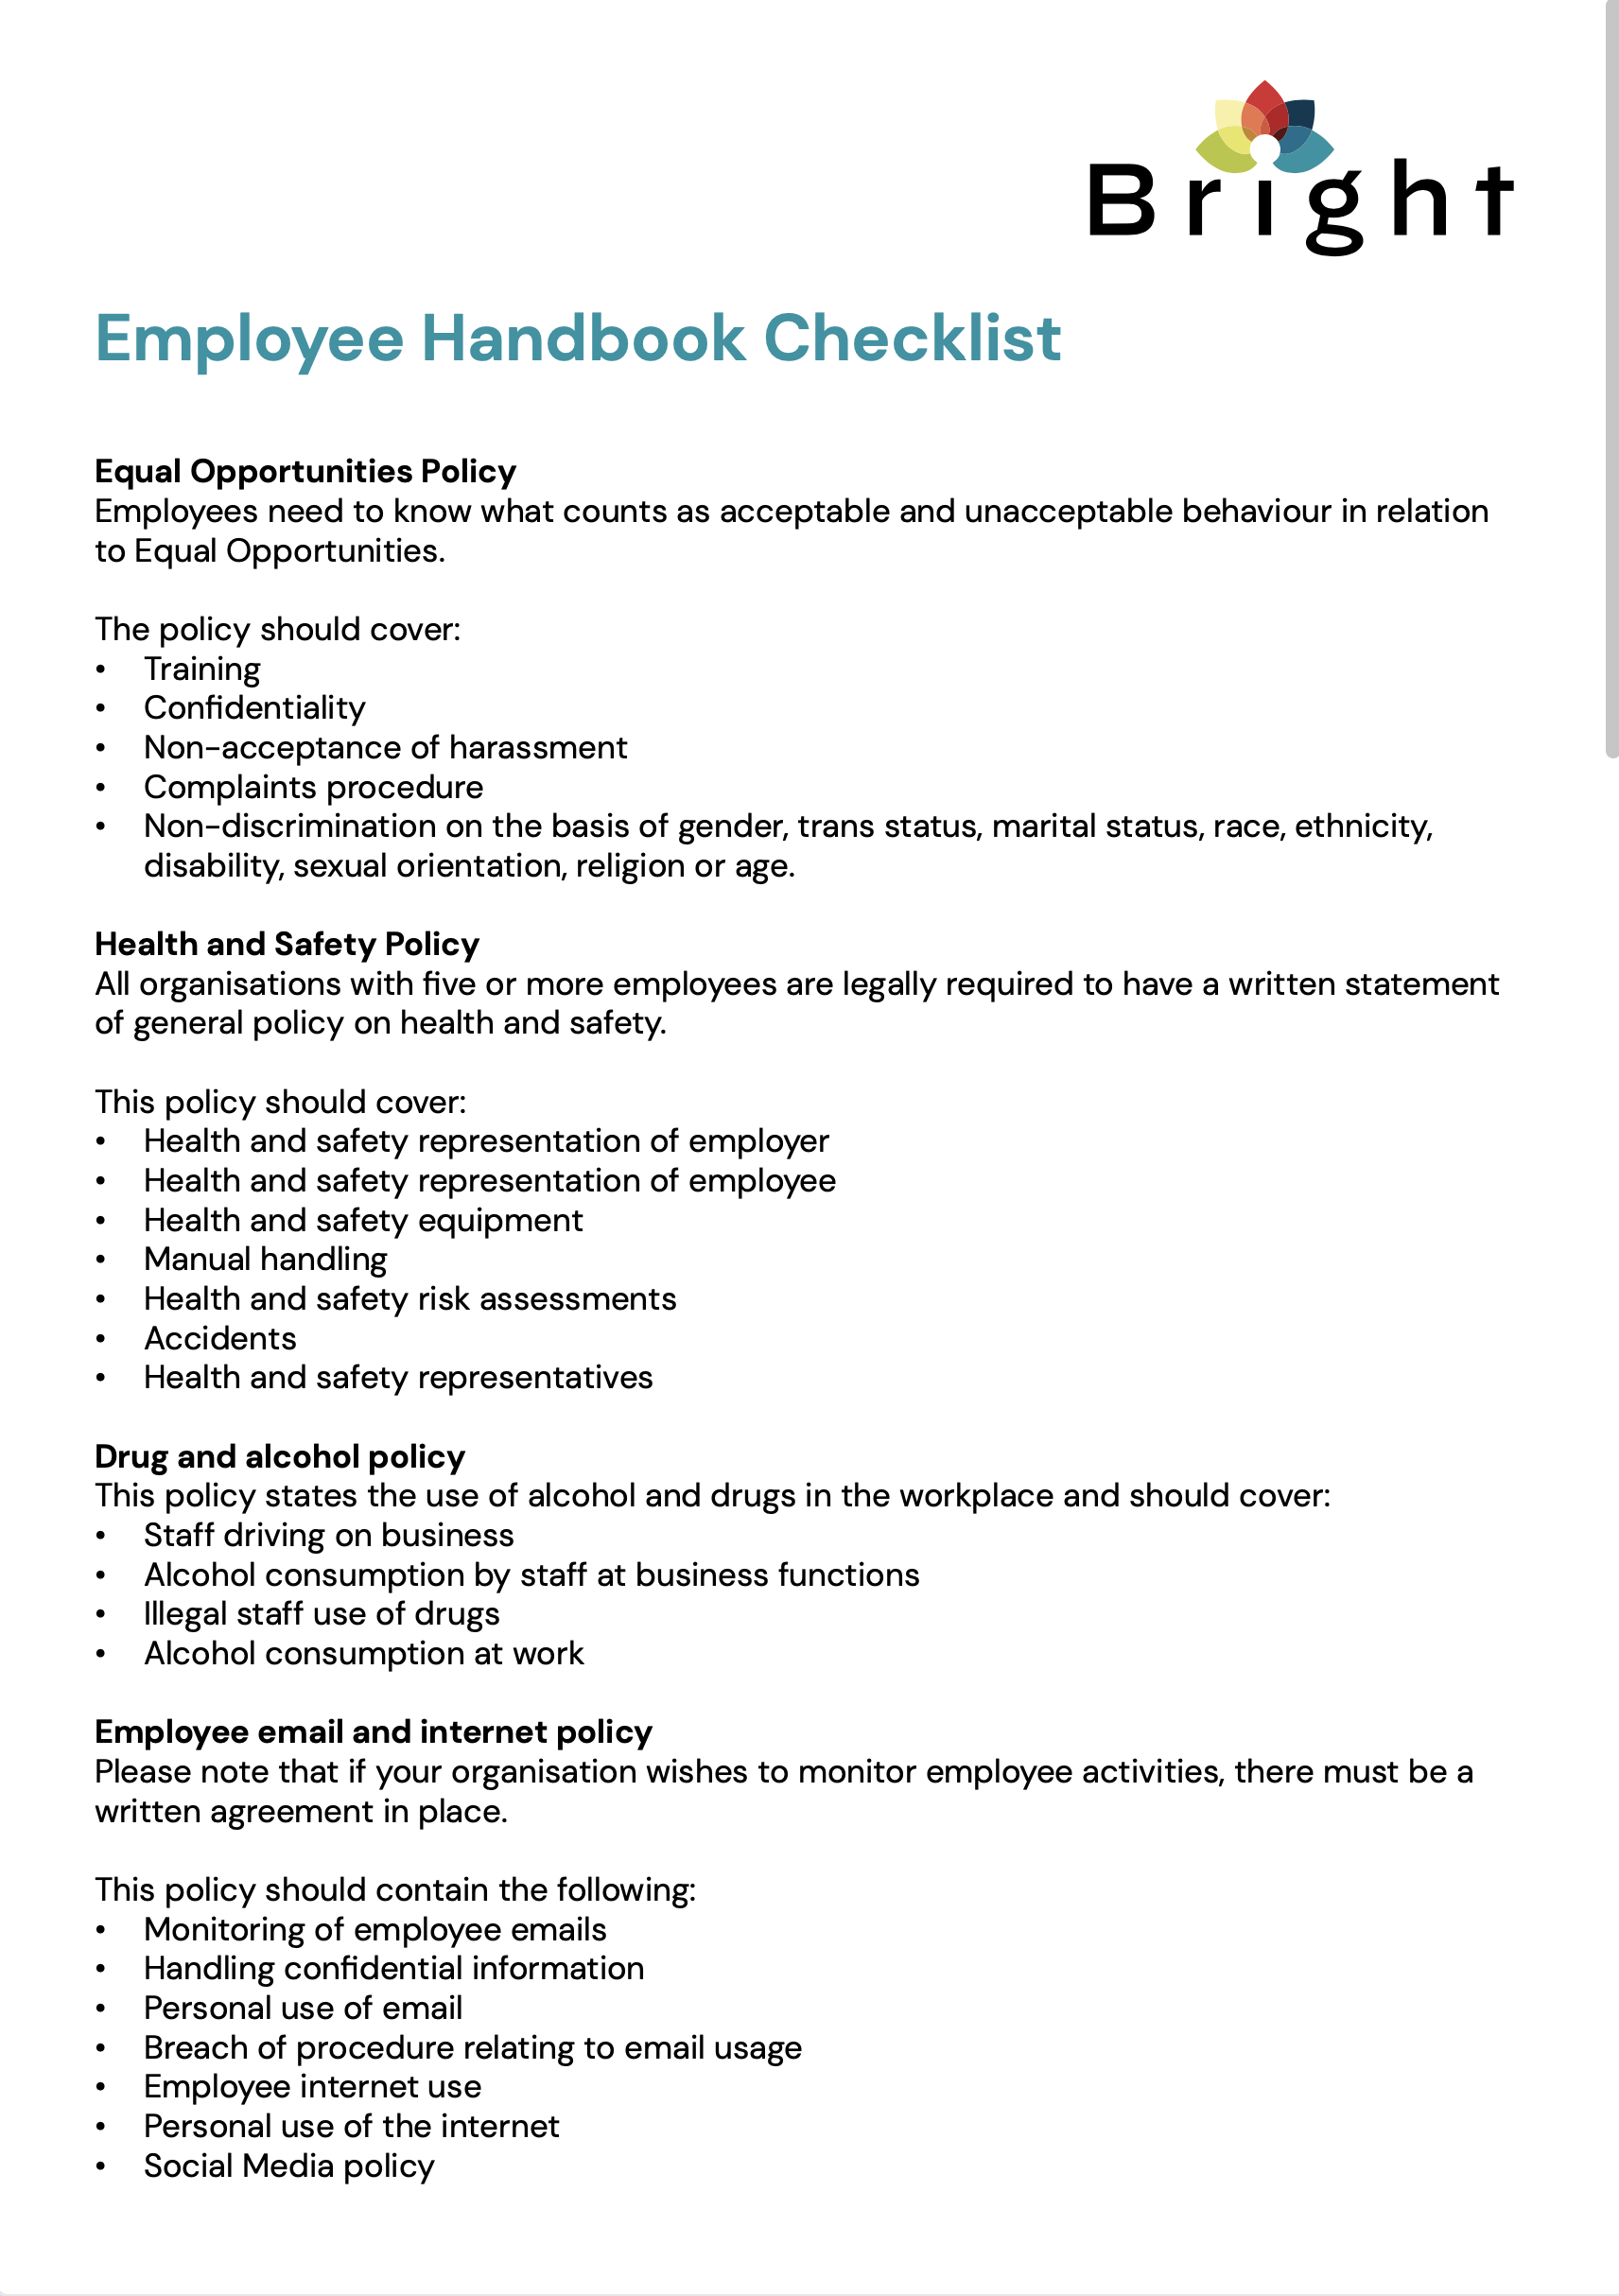 Employee handbook checklist